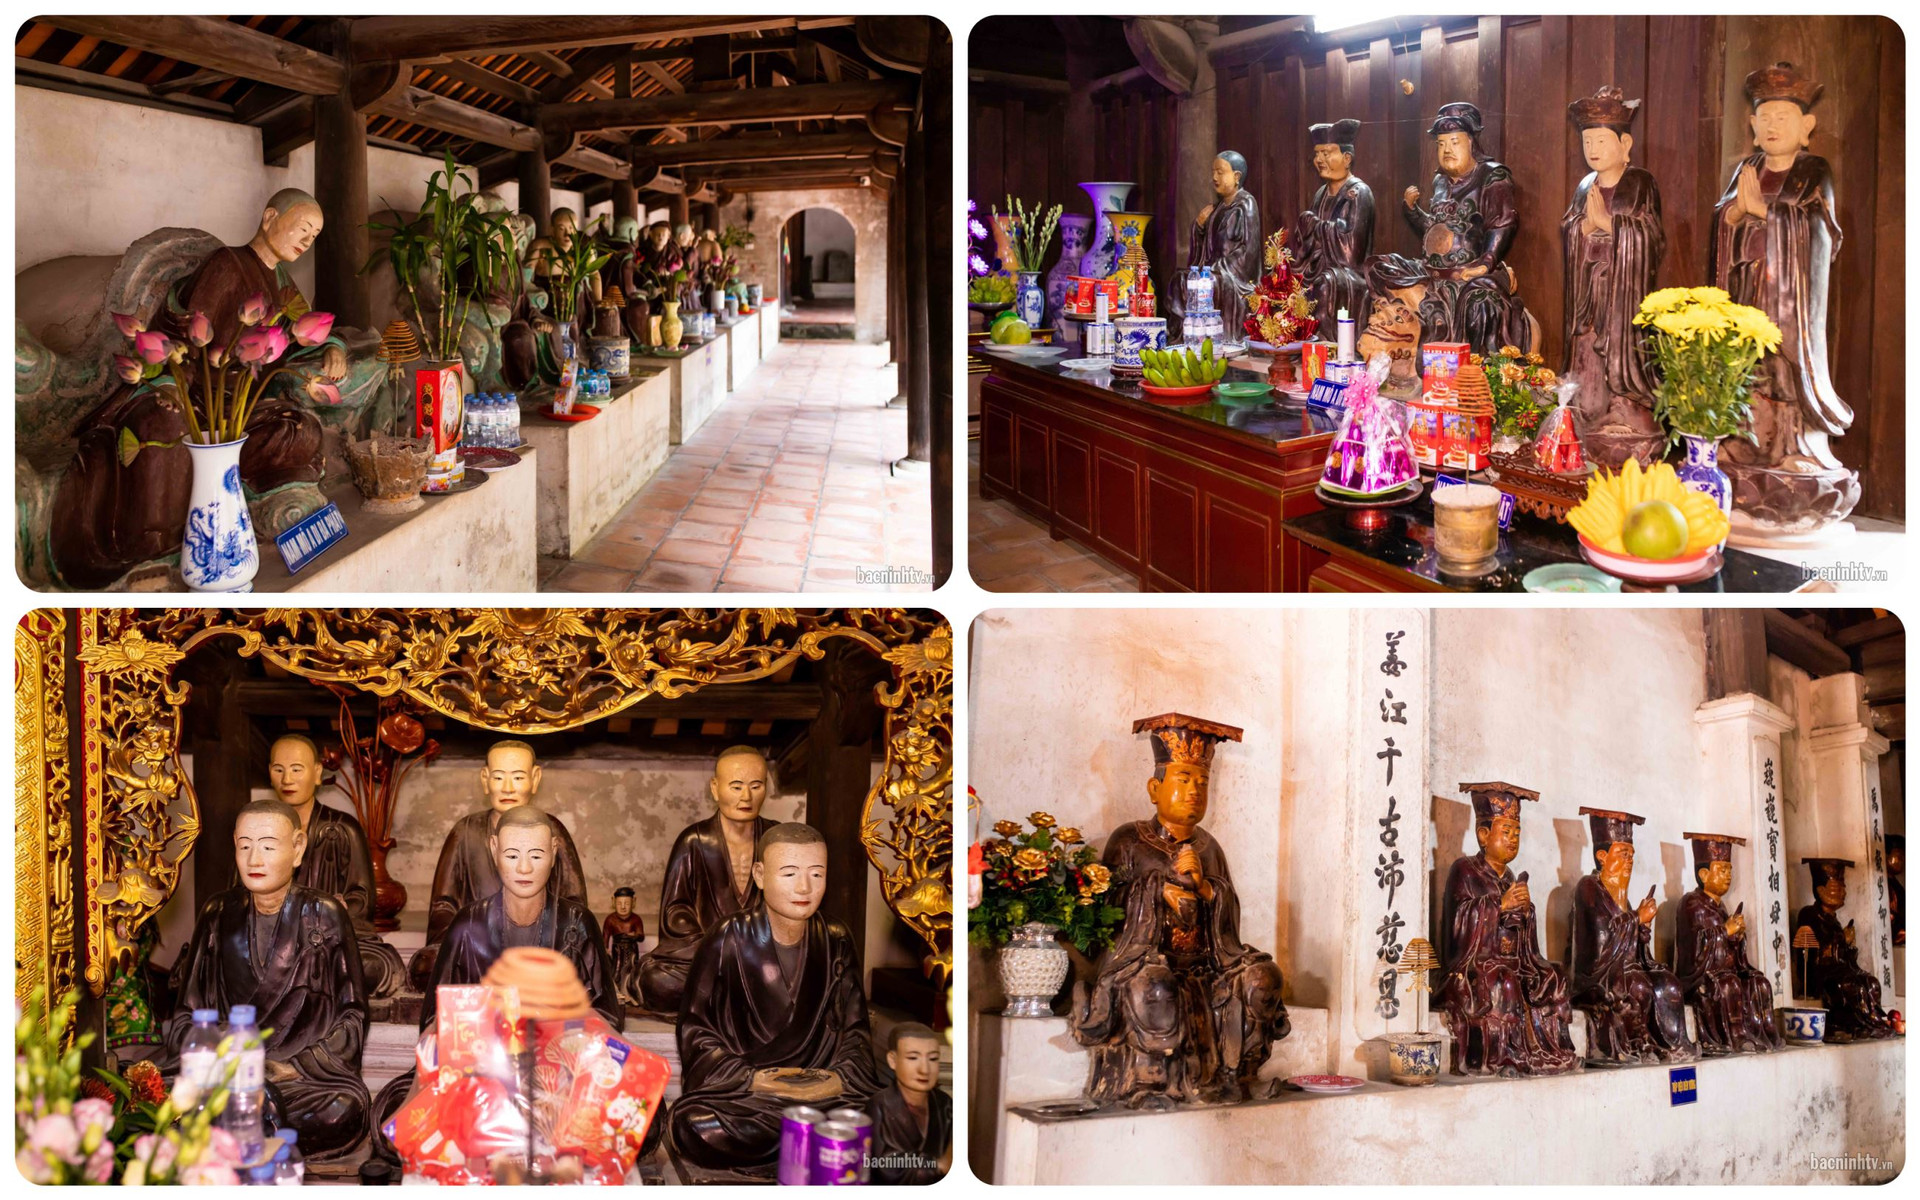 Hàng năm, lễ hội chùa Dâu được diễn ra trong ngày 8-9 tháng 4 âm lịch với quy mô rộng lớn